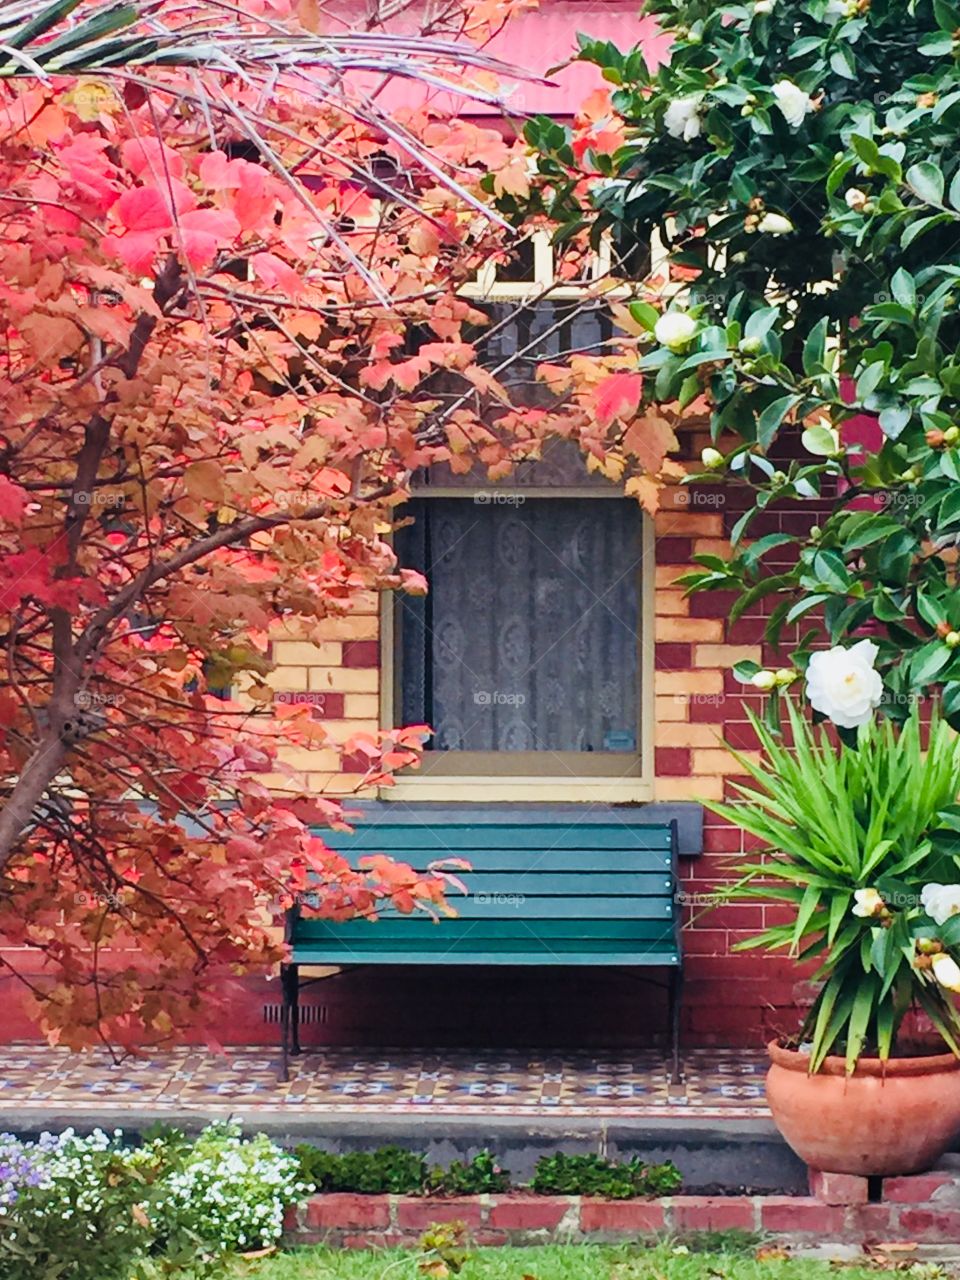 Autumn verandah